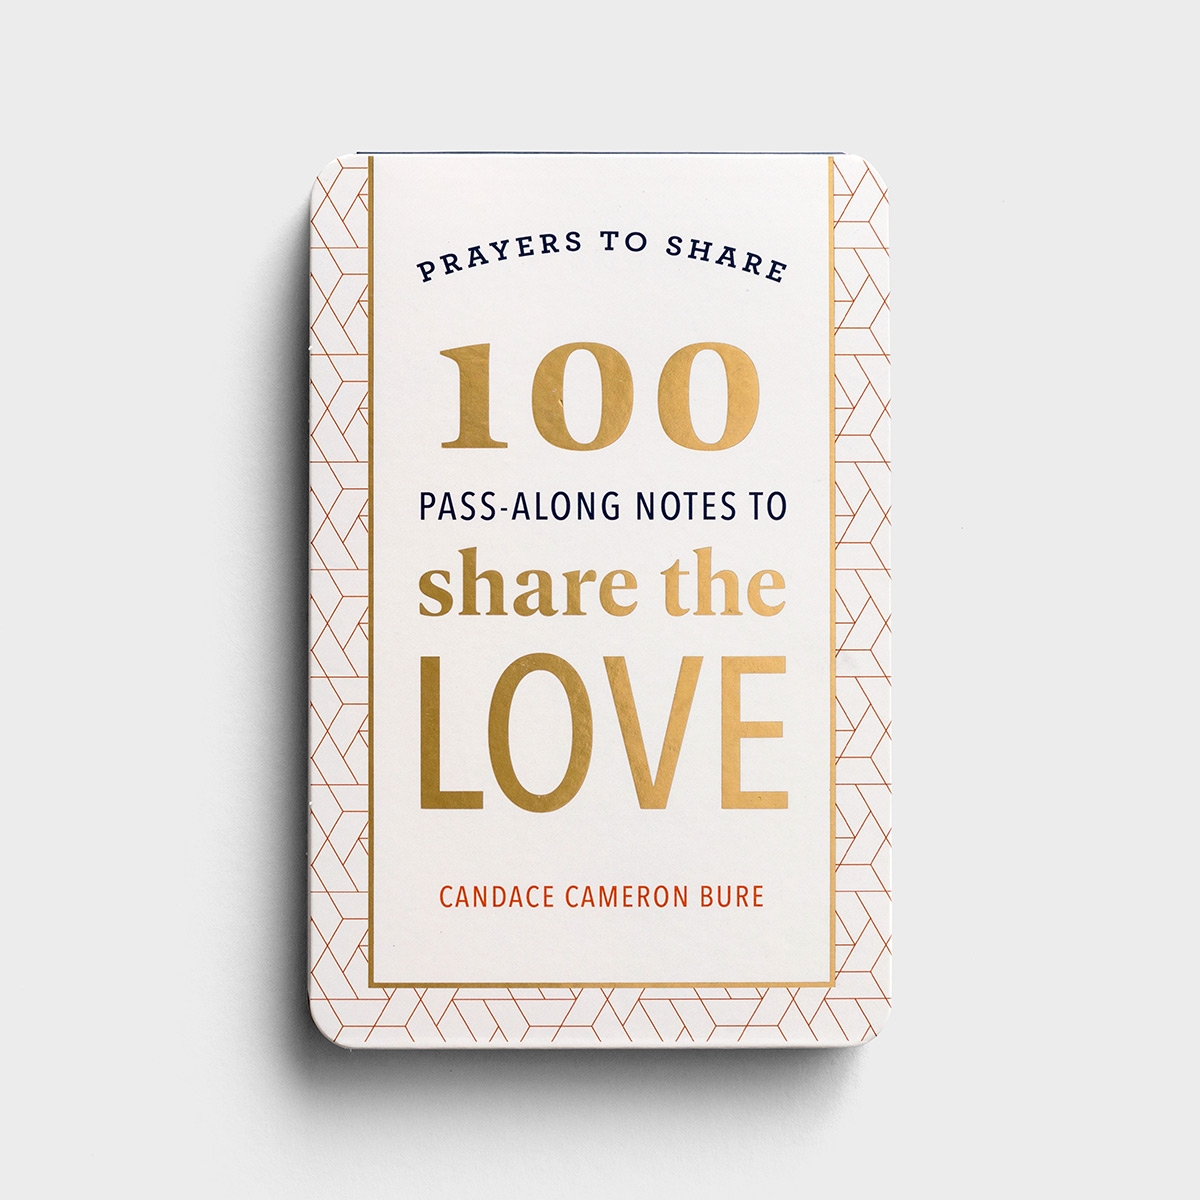 坎迪斯卡梅隆布尔-祈祷分享:100个传递笔记分享爱